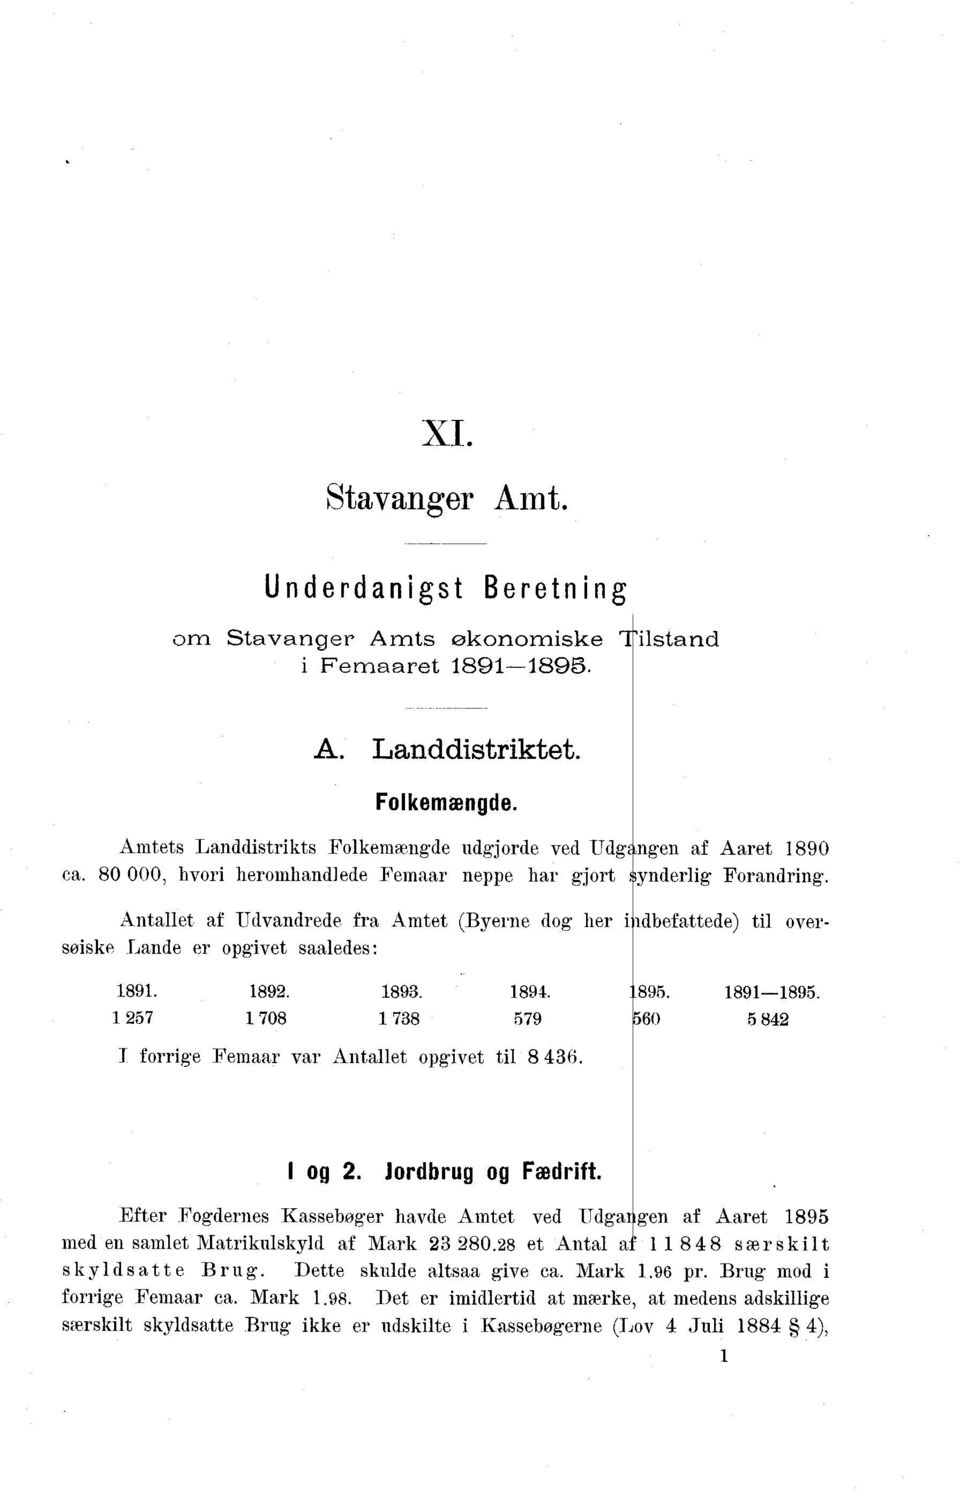 Antallet af Udvandrede fra Amtet (Byerne dog heri dbefattede) til oversøiske Lande er opgivet saaledes : 1891. 1892. 1893. 1894. 895. 1891-1895.